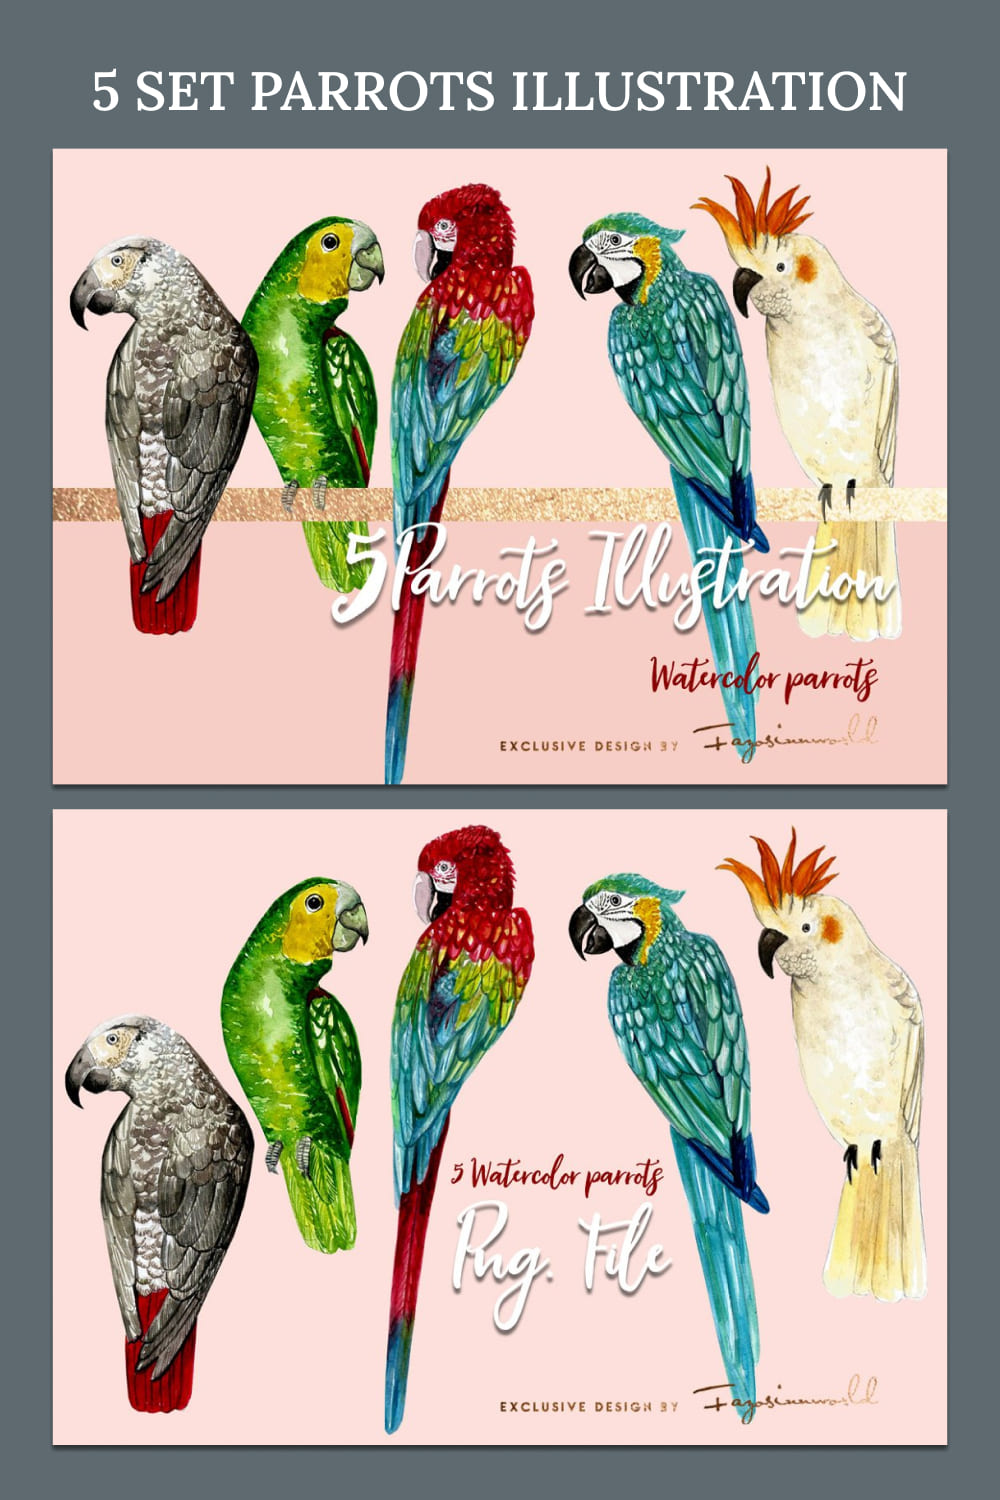 5 set parrots illustration - pinterest image preview.